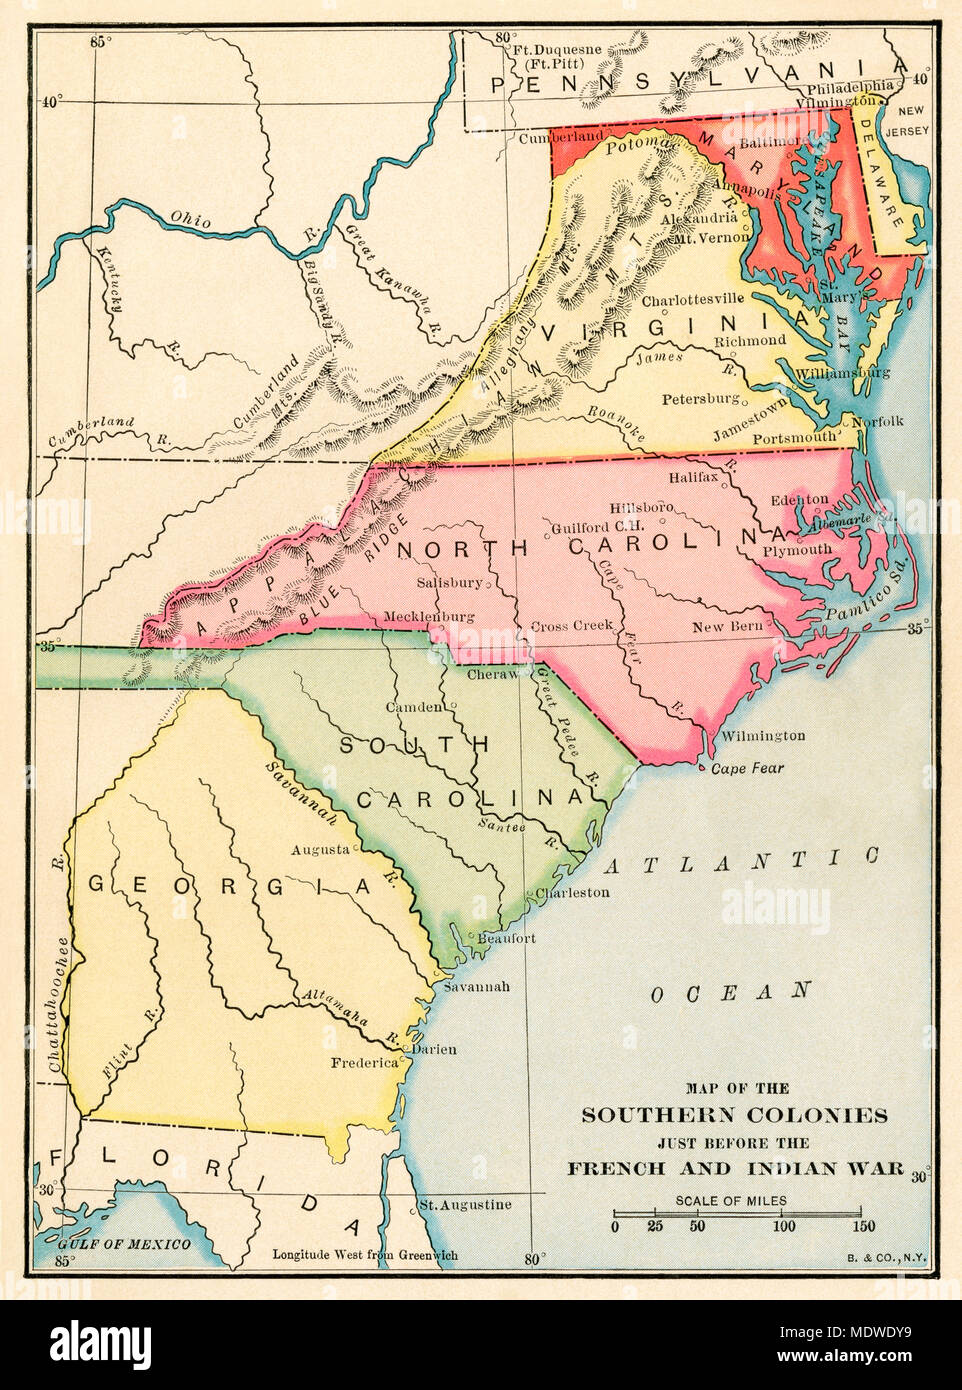 Südlichen Kolonien vor dem Franzosen- und Indianerkrieg. Gedruckte farbige Lithographie Stockfoto